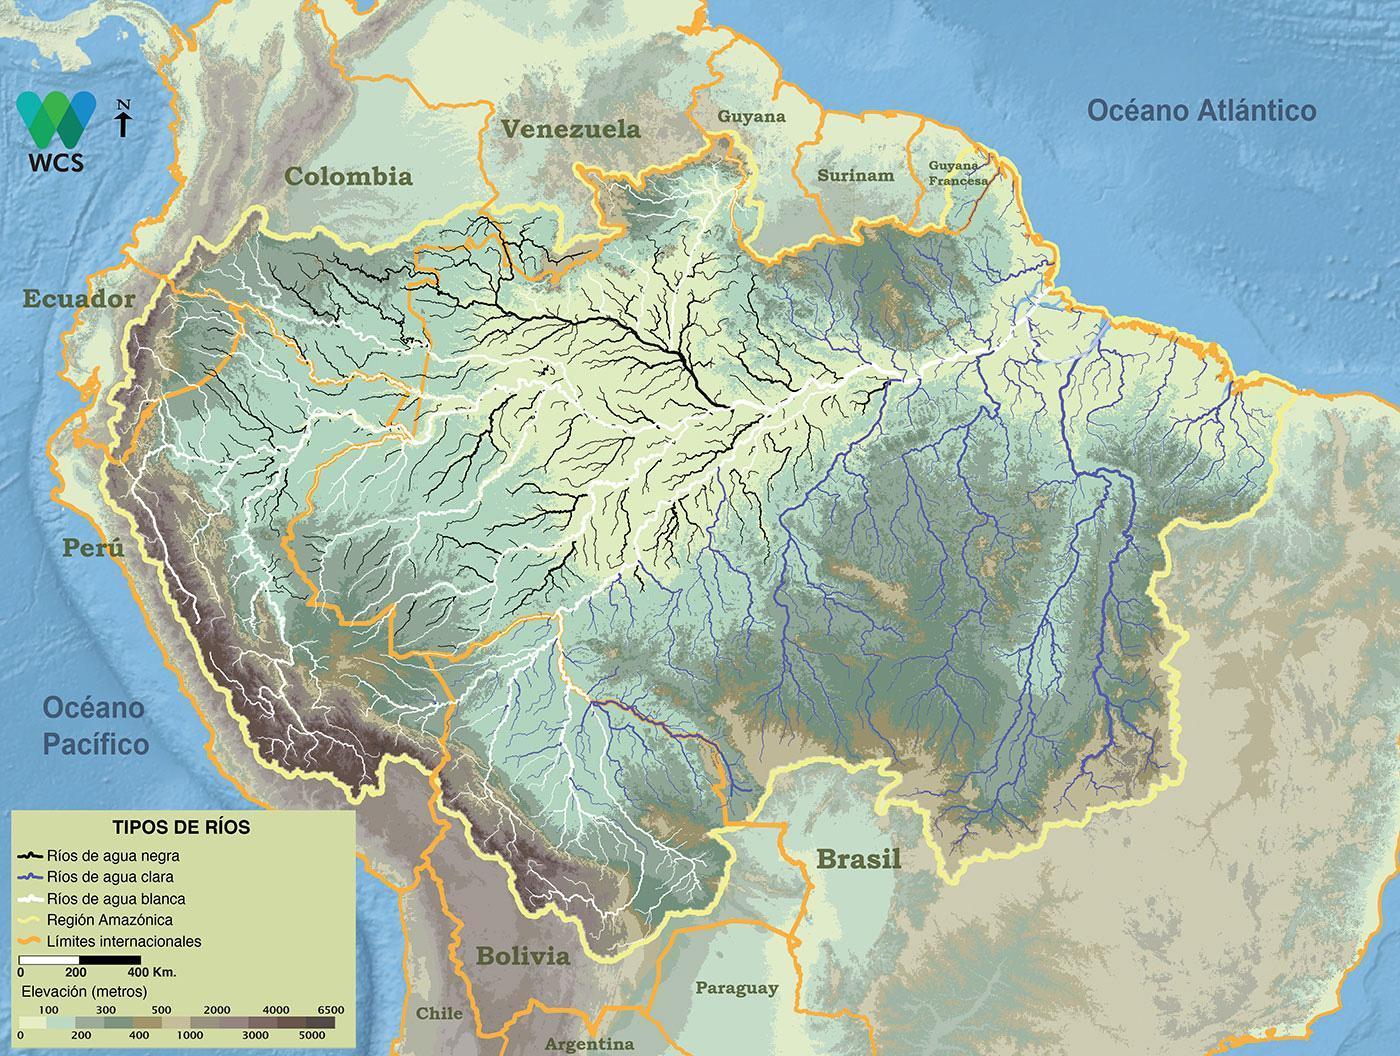 En la cuenca amazónica varios tipos de agua, que van desde alcalina hasta altamente ácida, pueden clasificarse en ríos de aguas blancas, aguas negras y aguas claras. Los diferentes tipos de agua tienen una gran influencia en la productividad acuática y la biodiversidad. El grosor de las líneas de los ríos no representa la descarga del río.